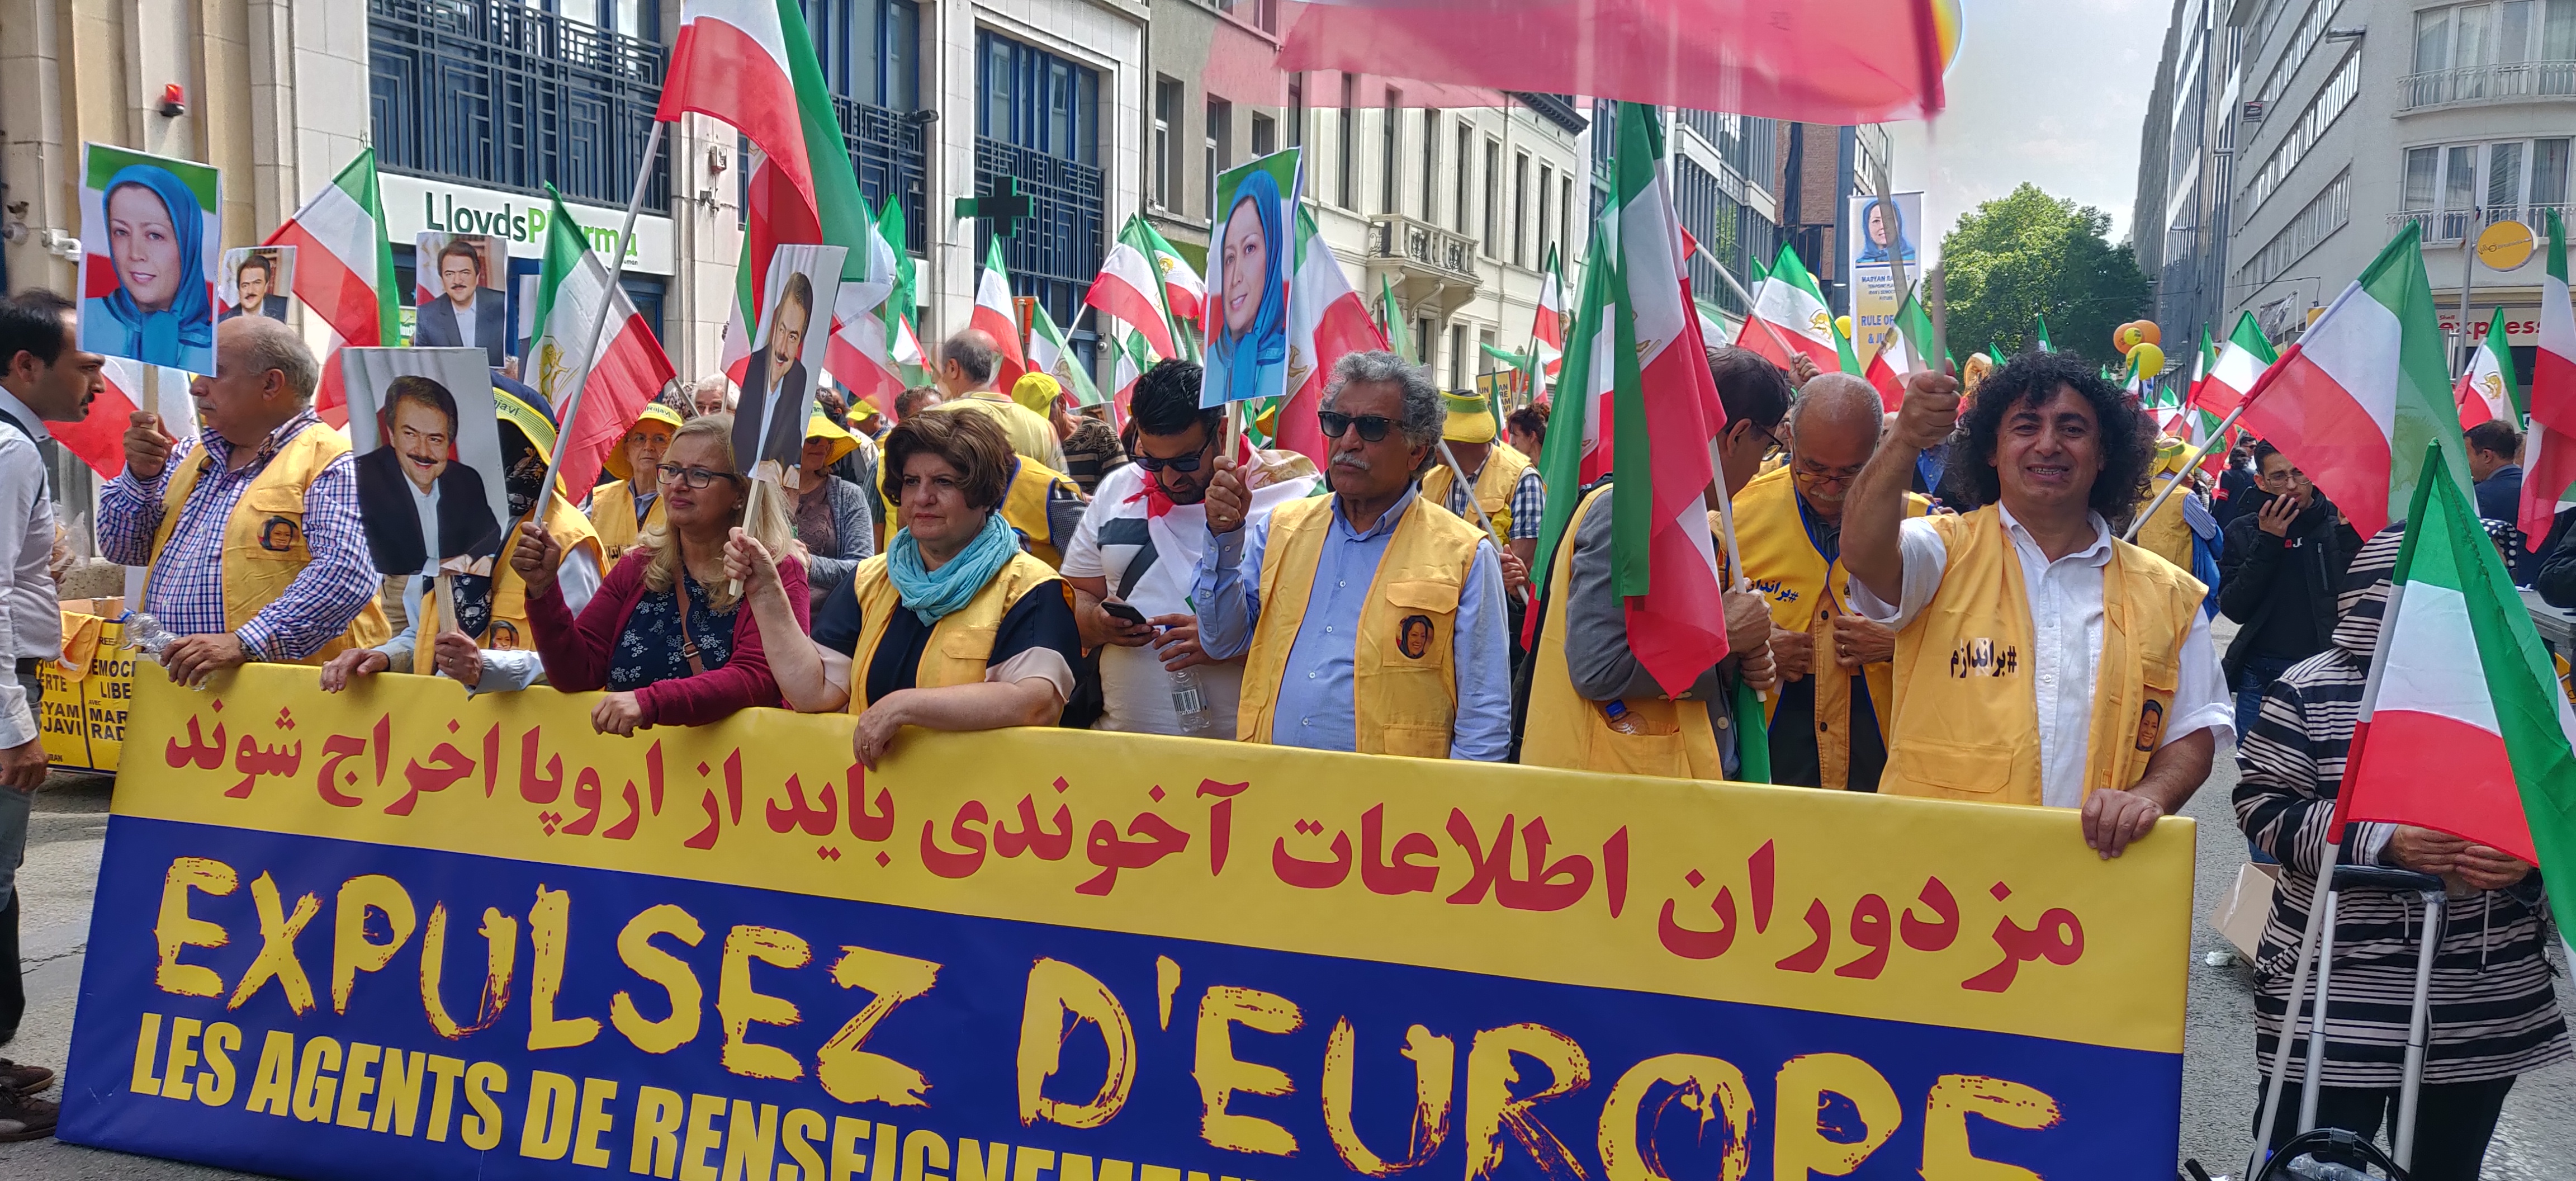 Demonstration mot iranska regimen, Bryssel, 15 juni 2019